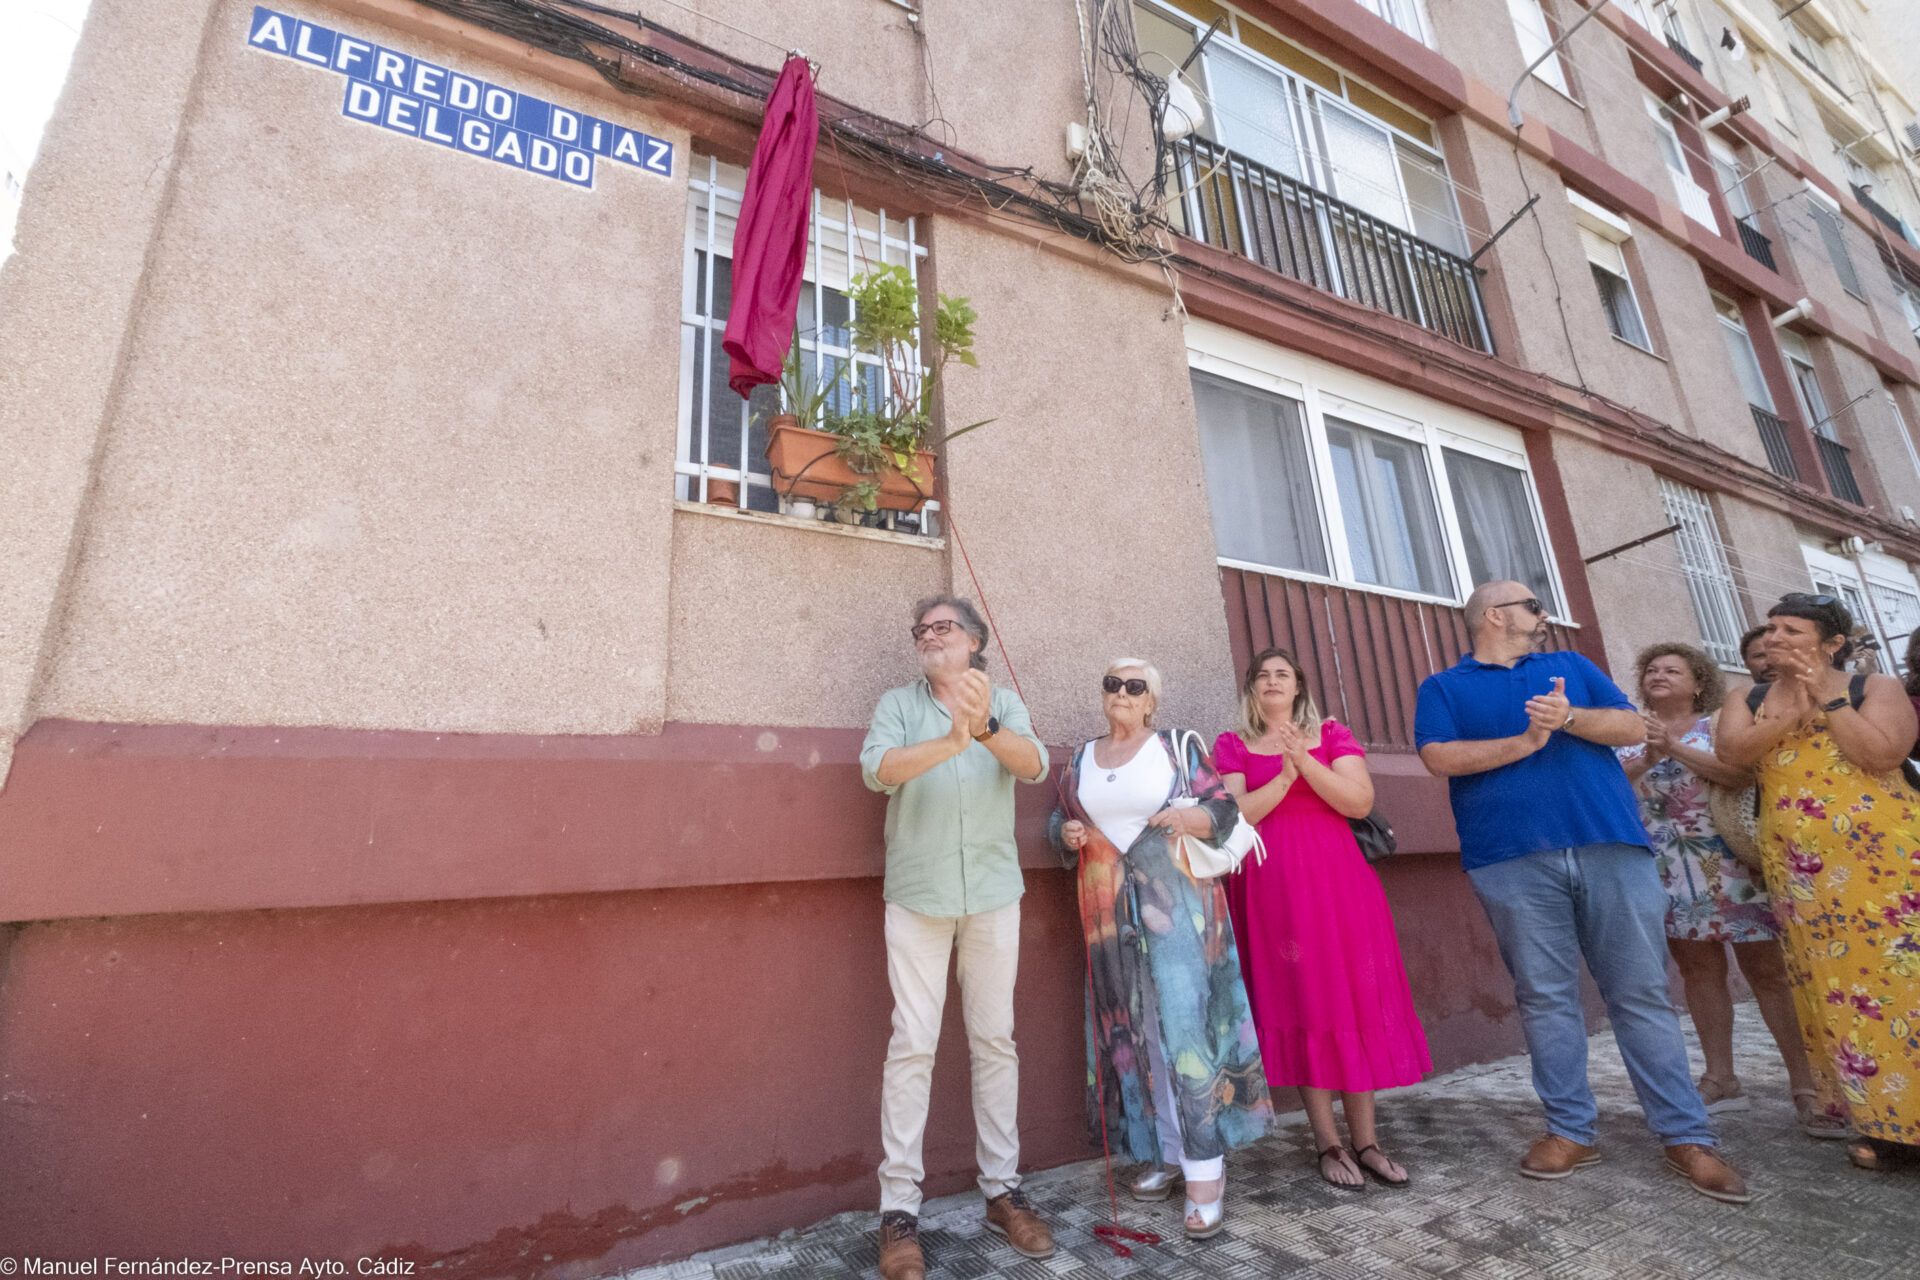 Cádiz inaugura la calle Alfredo Díaz Delgado, en honor al querido farmacéutico fallecido durante la pandemia